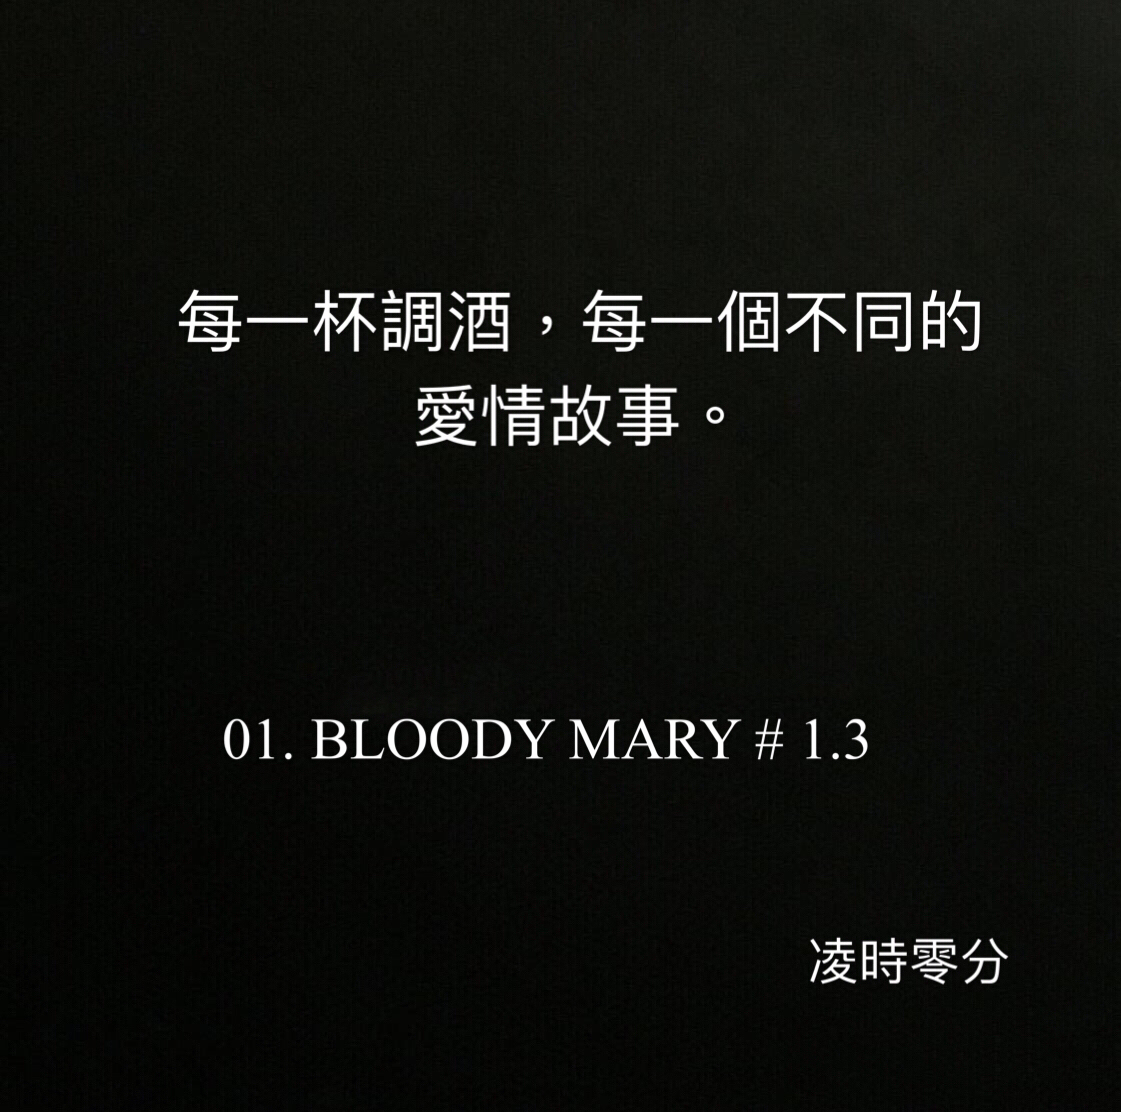 （系列短篇故事）每一杯調酒，每一個不同的愛情故事。01 BLOODY MARY # 1.3